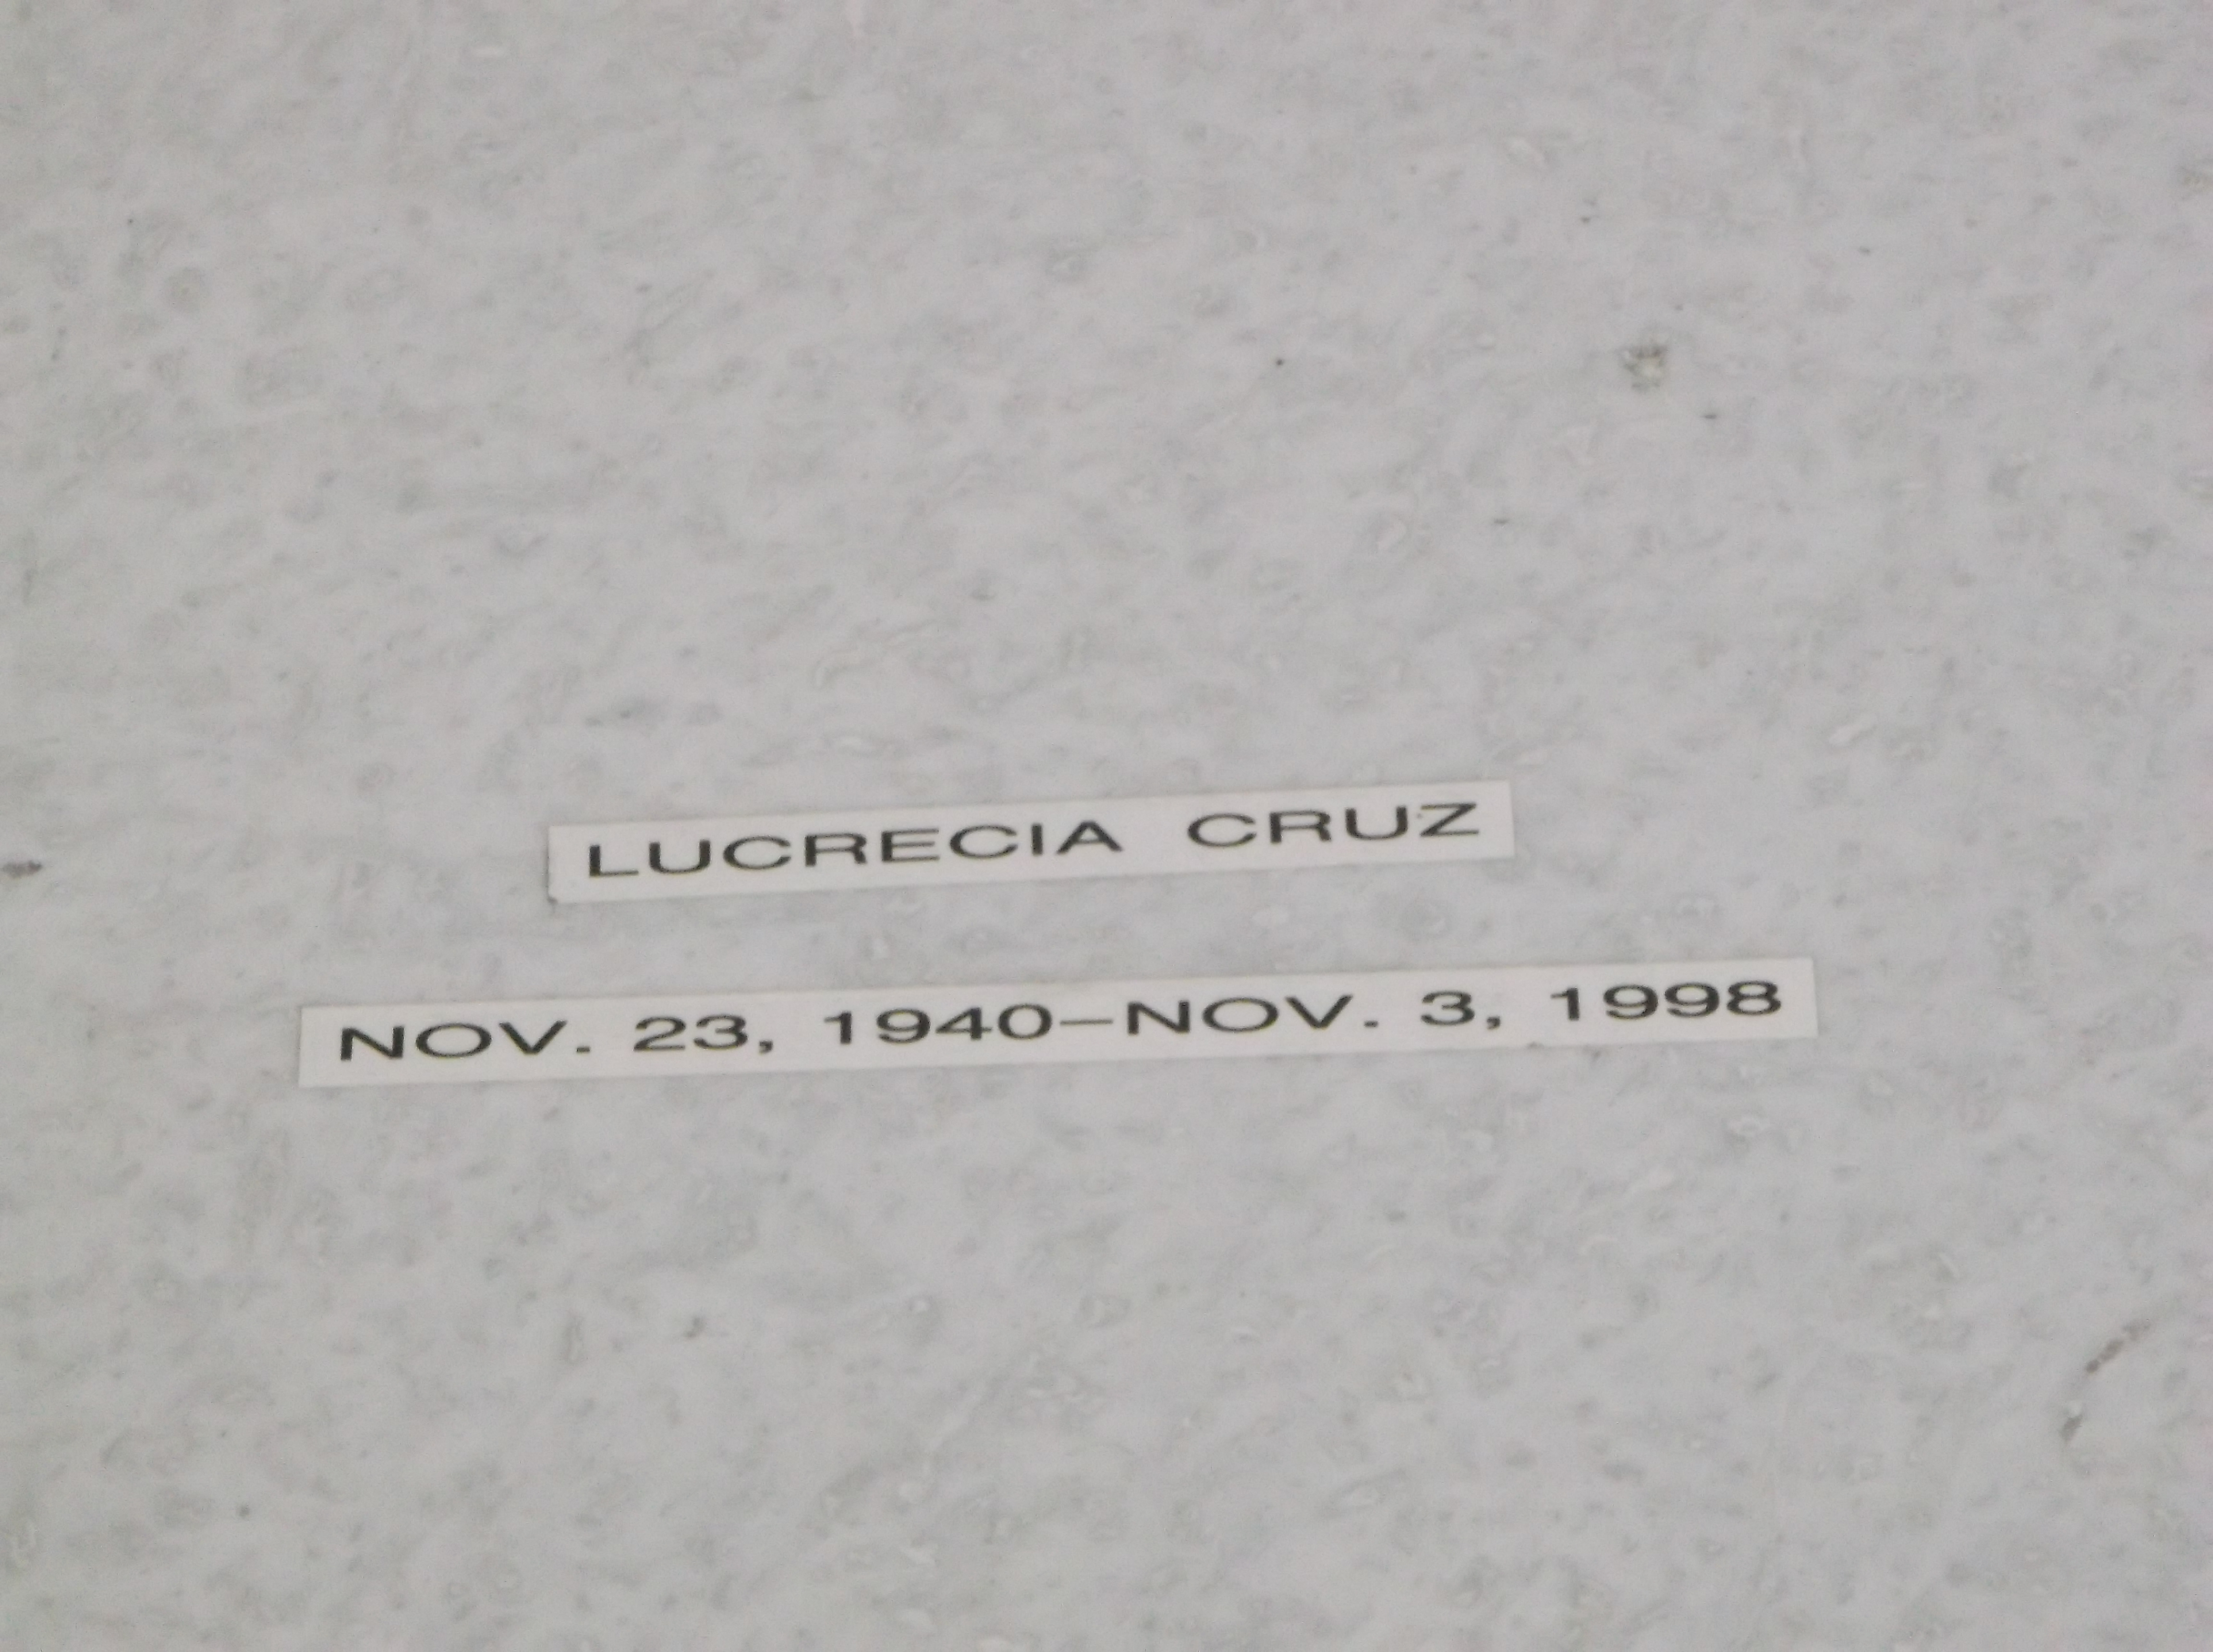 Lucrecia Cruz